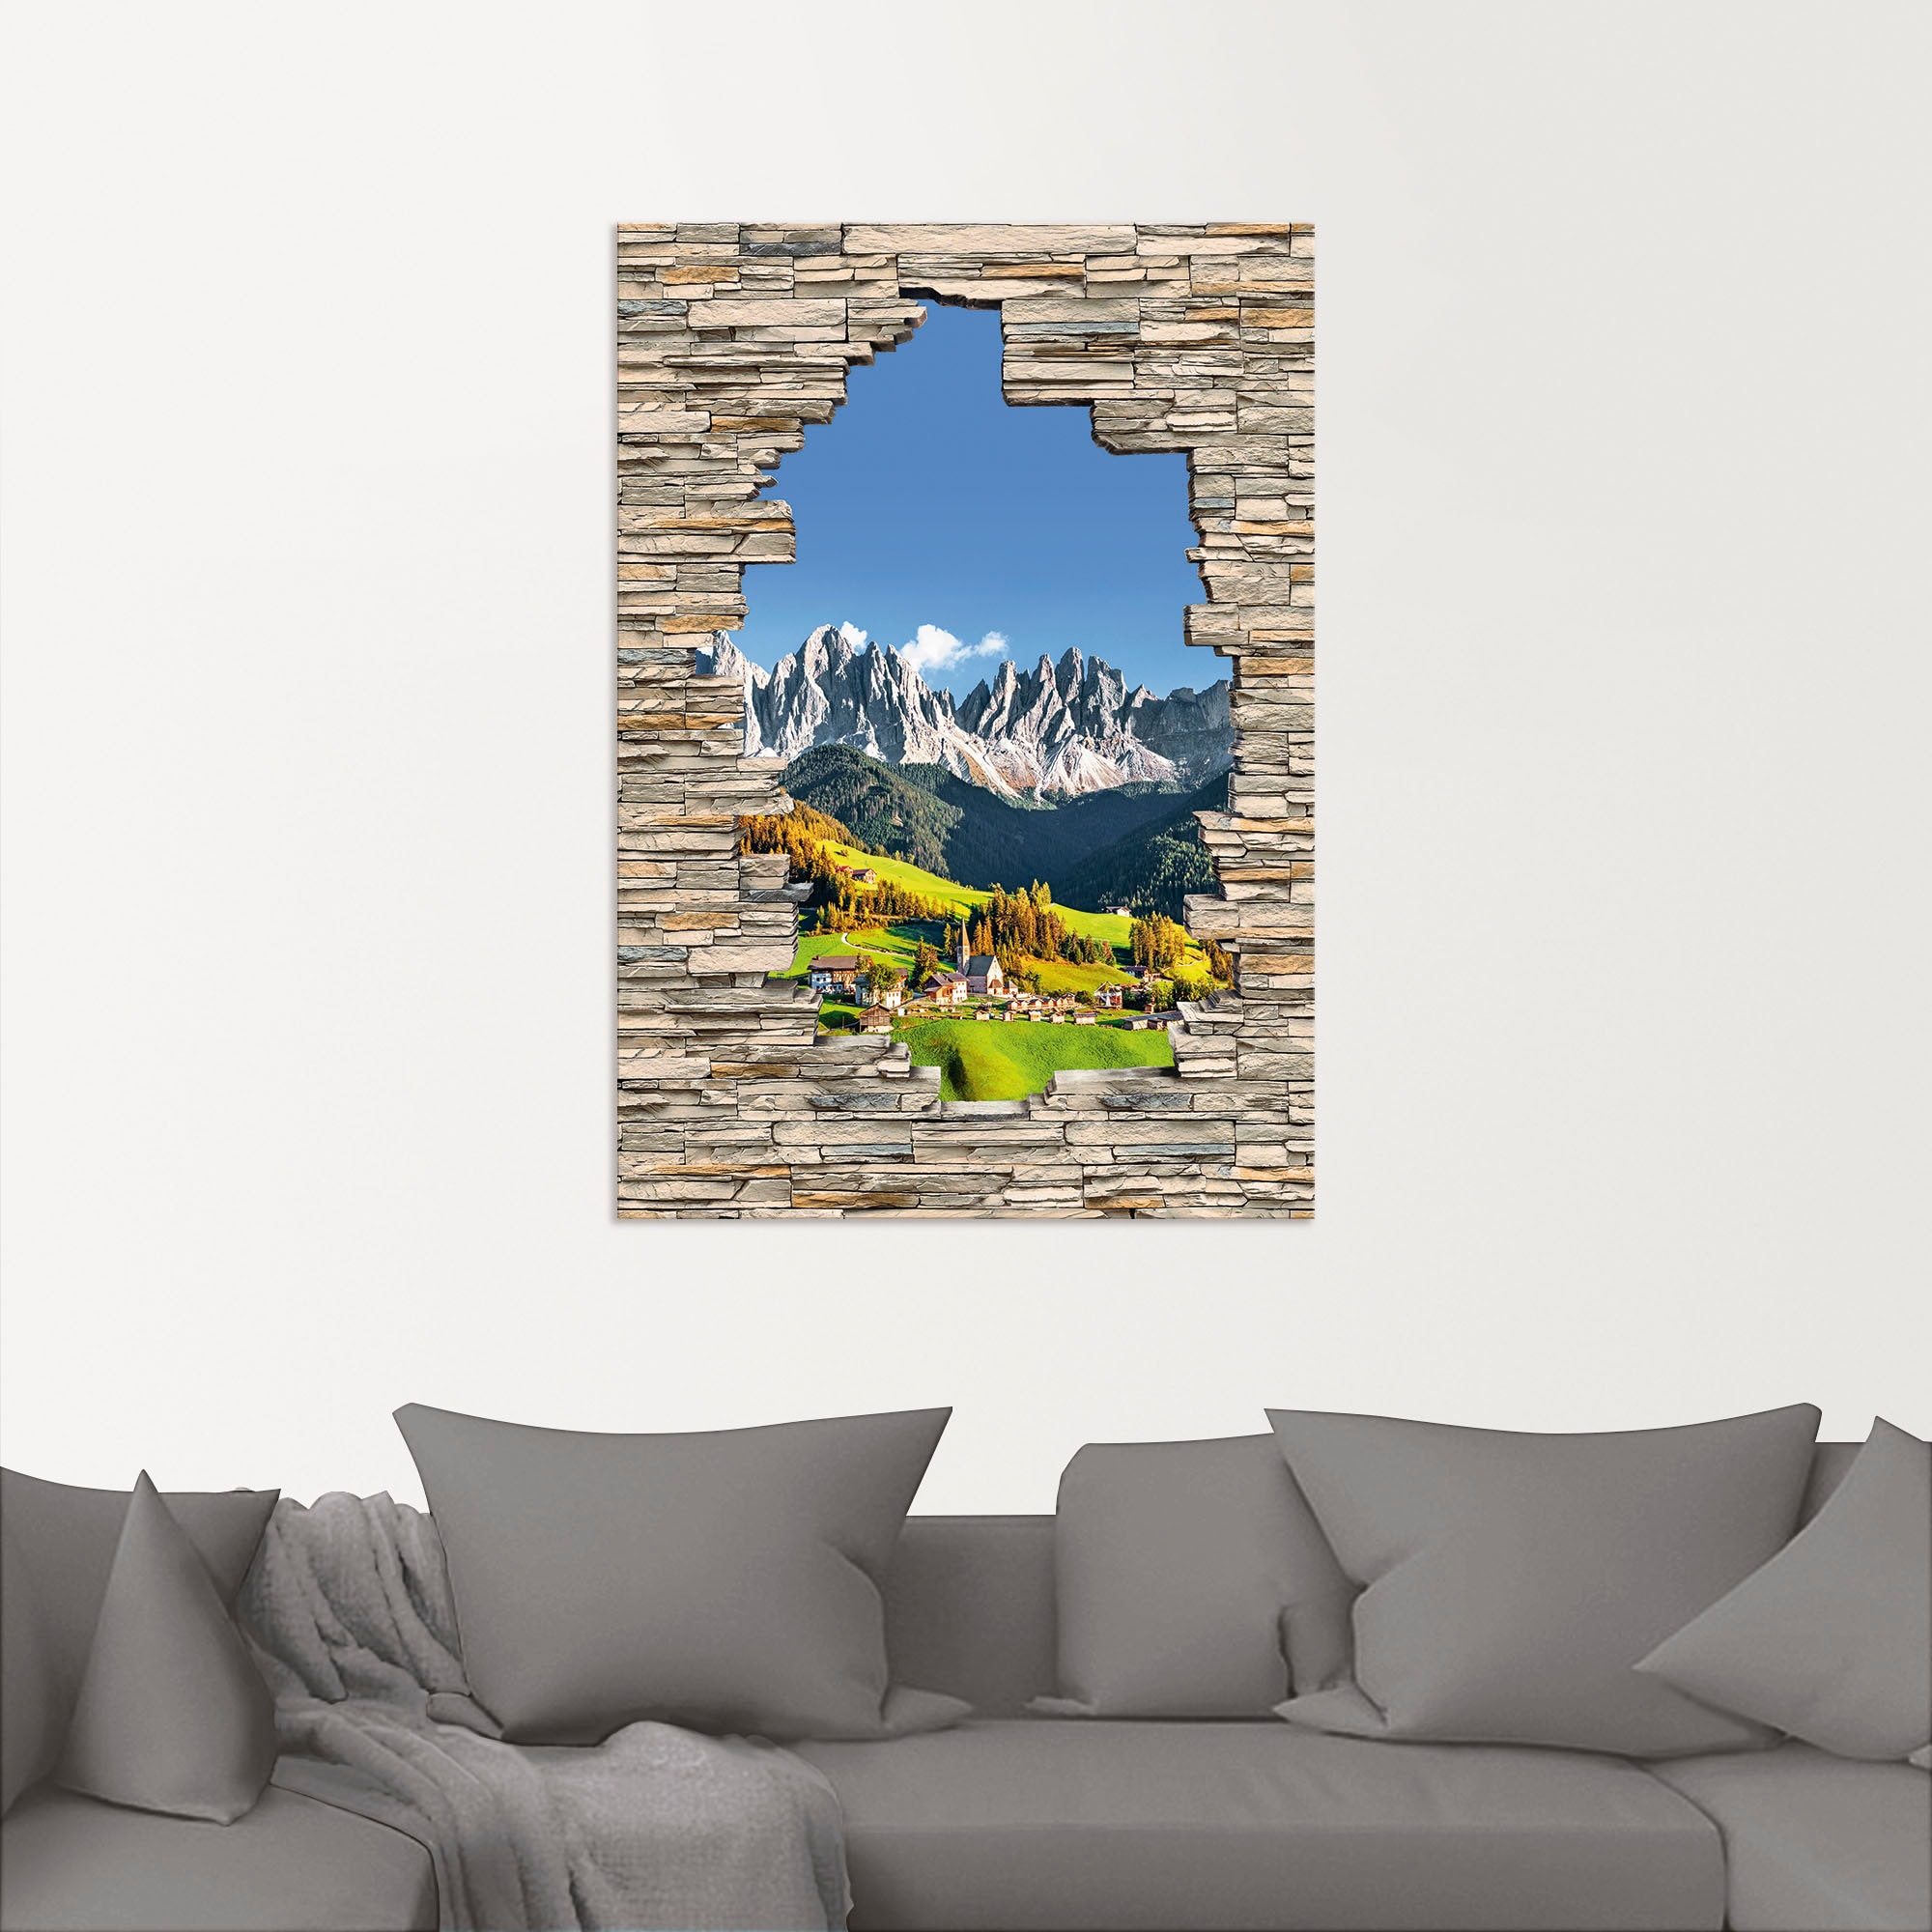 Artland Wandbild »Alpen Berge Santa Maddalena Stein Mauer«, Berge & Alpenbilder, (1 St.), als Alubild, Outdoorbild, Wandaufkleber in verschied. Größen